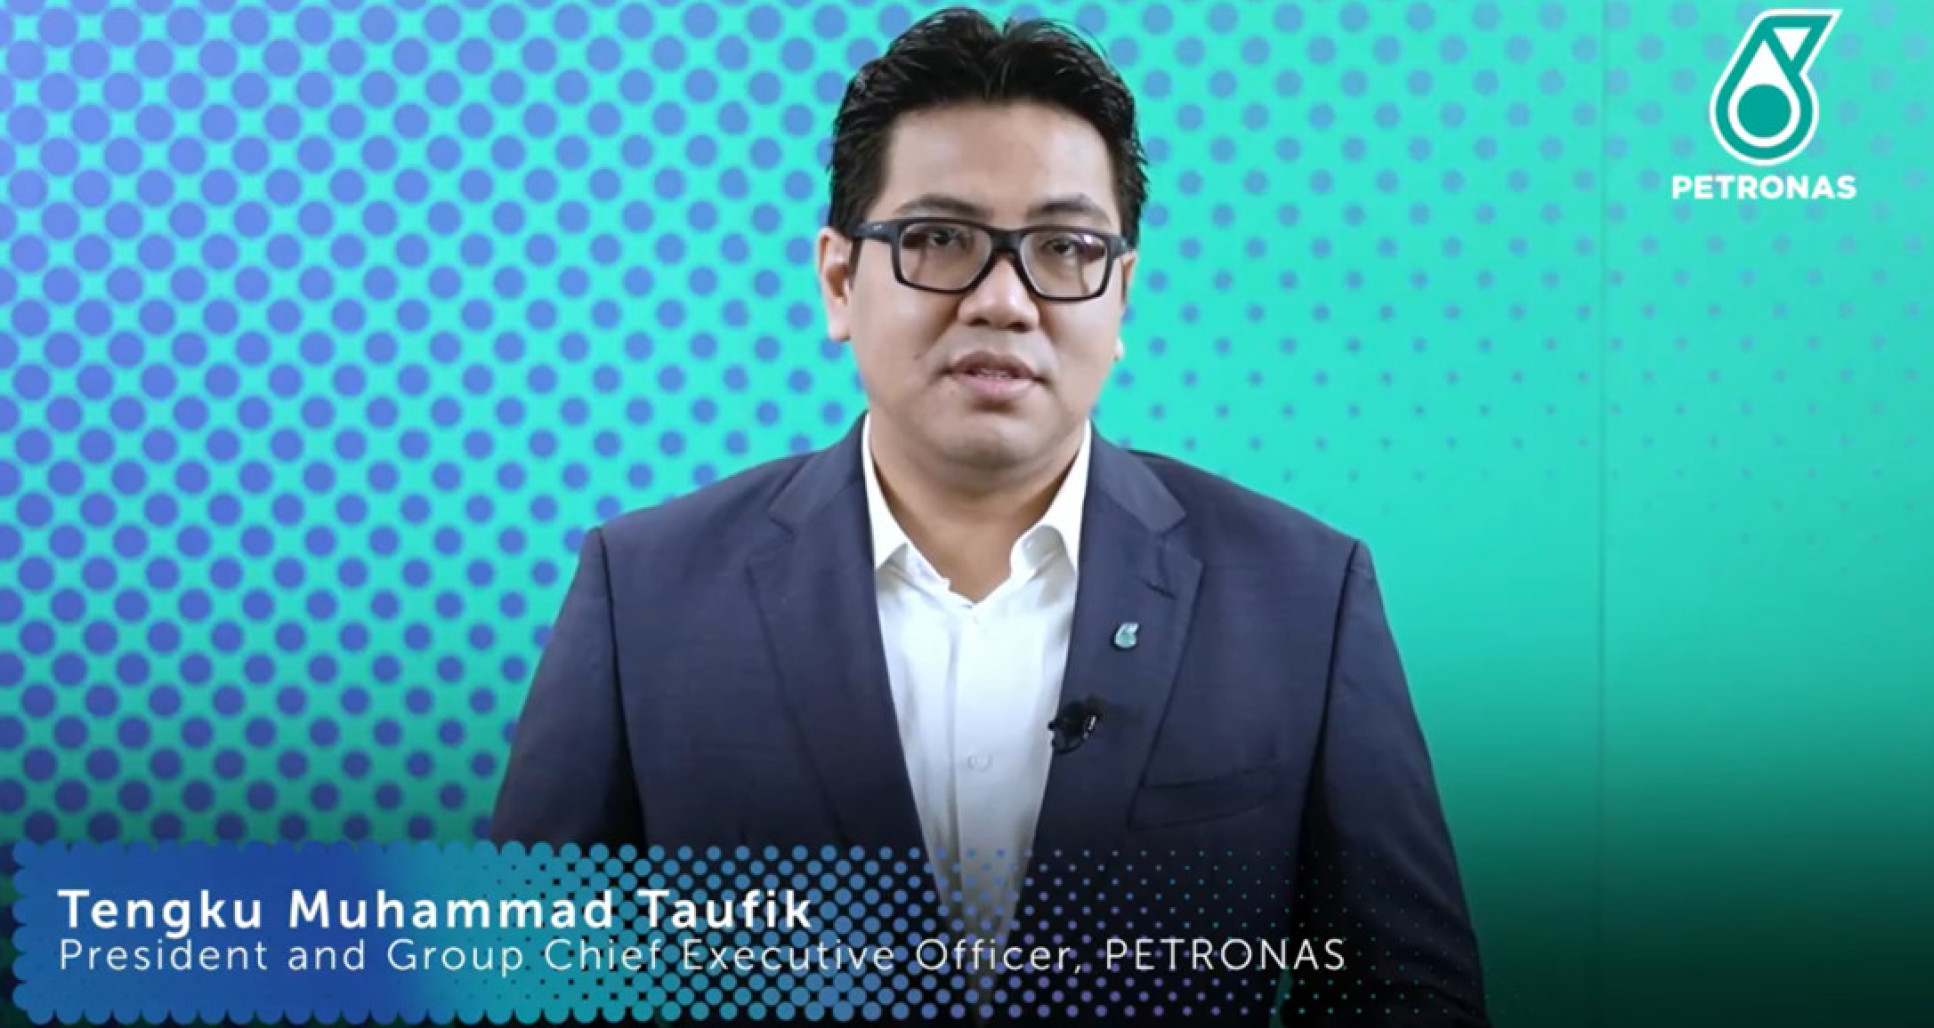 Tengku Muhammad Taufik, President and CEO of PETRONAS